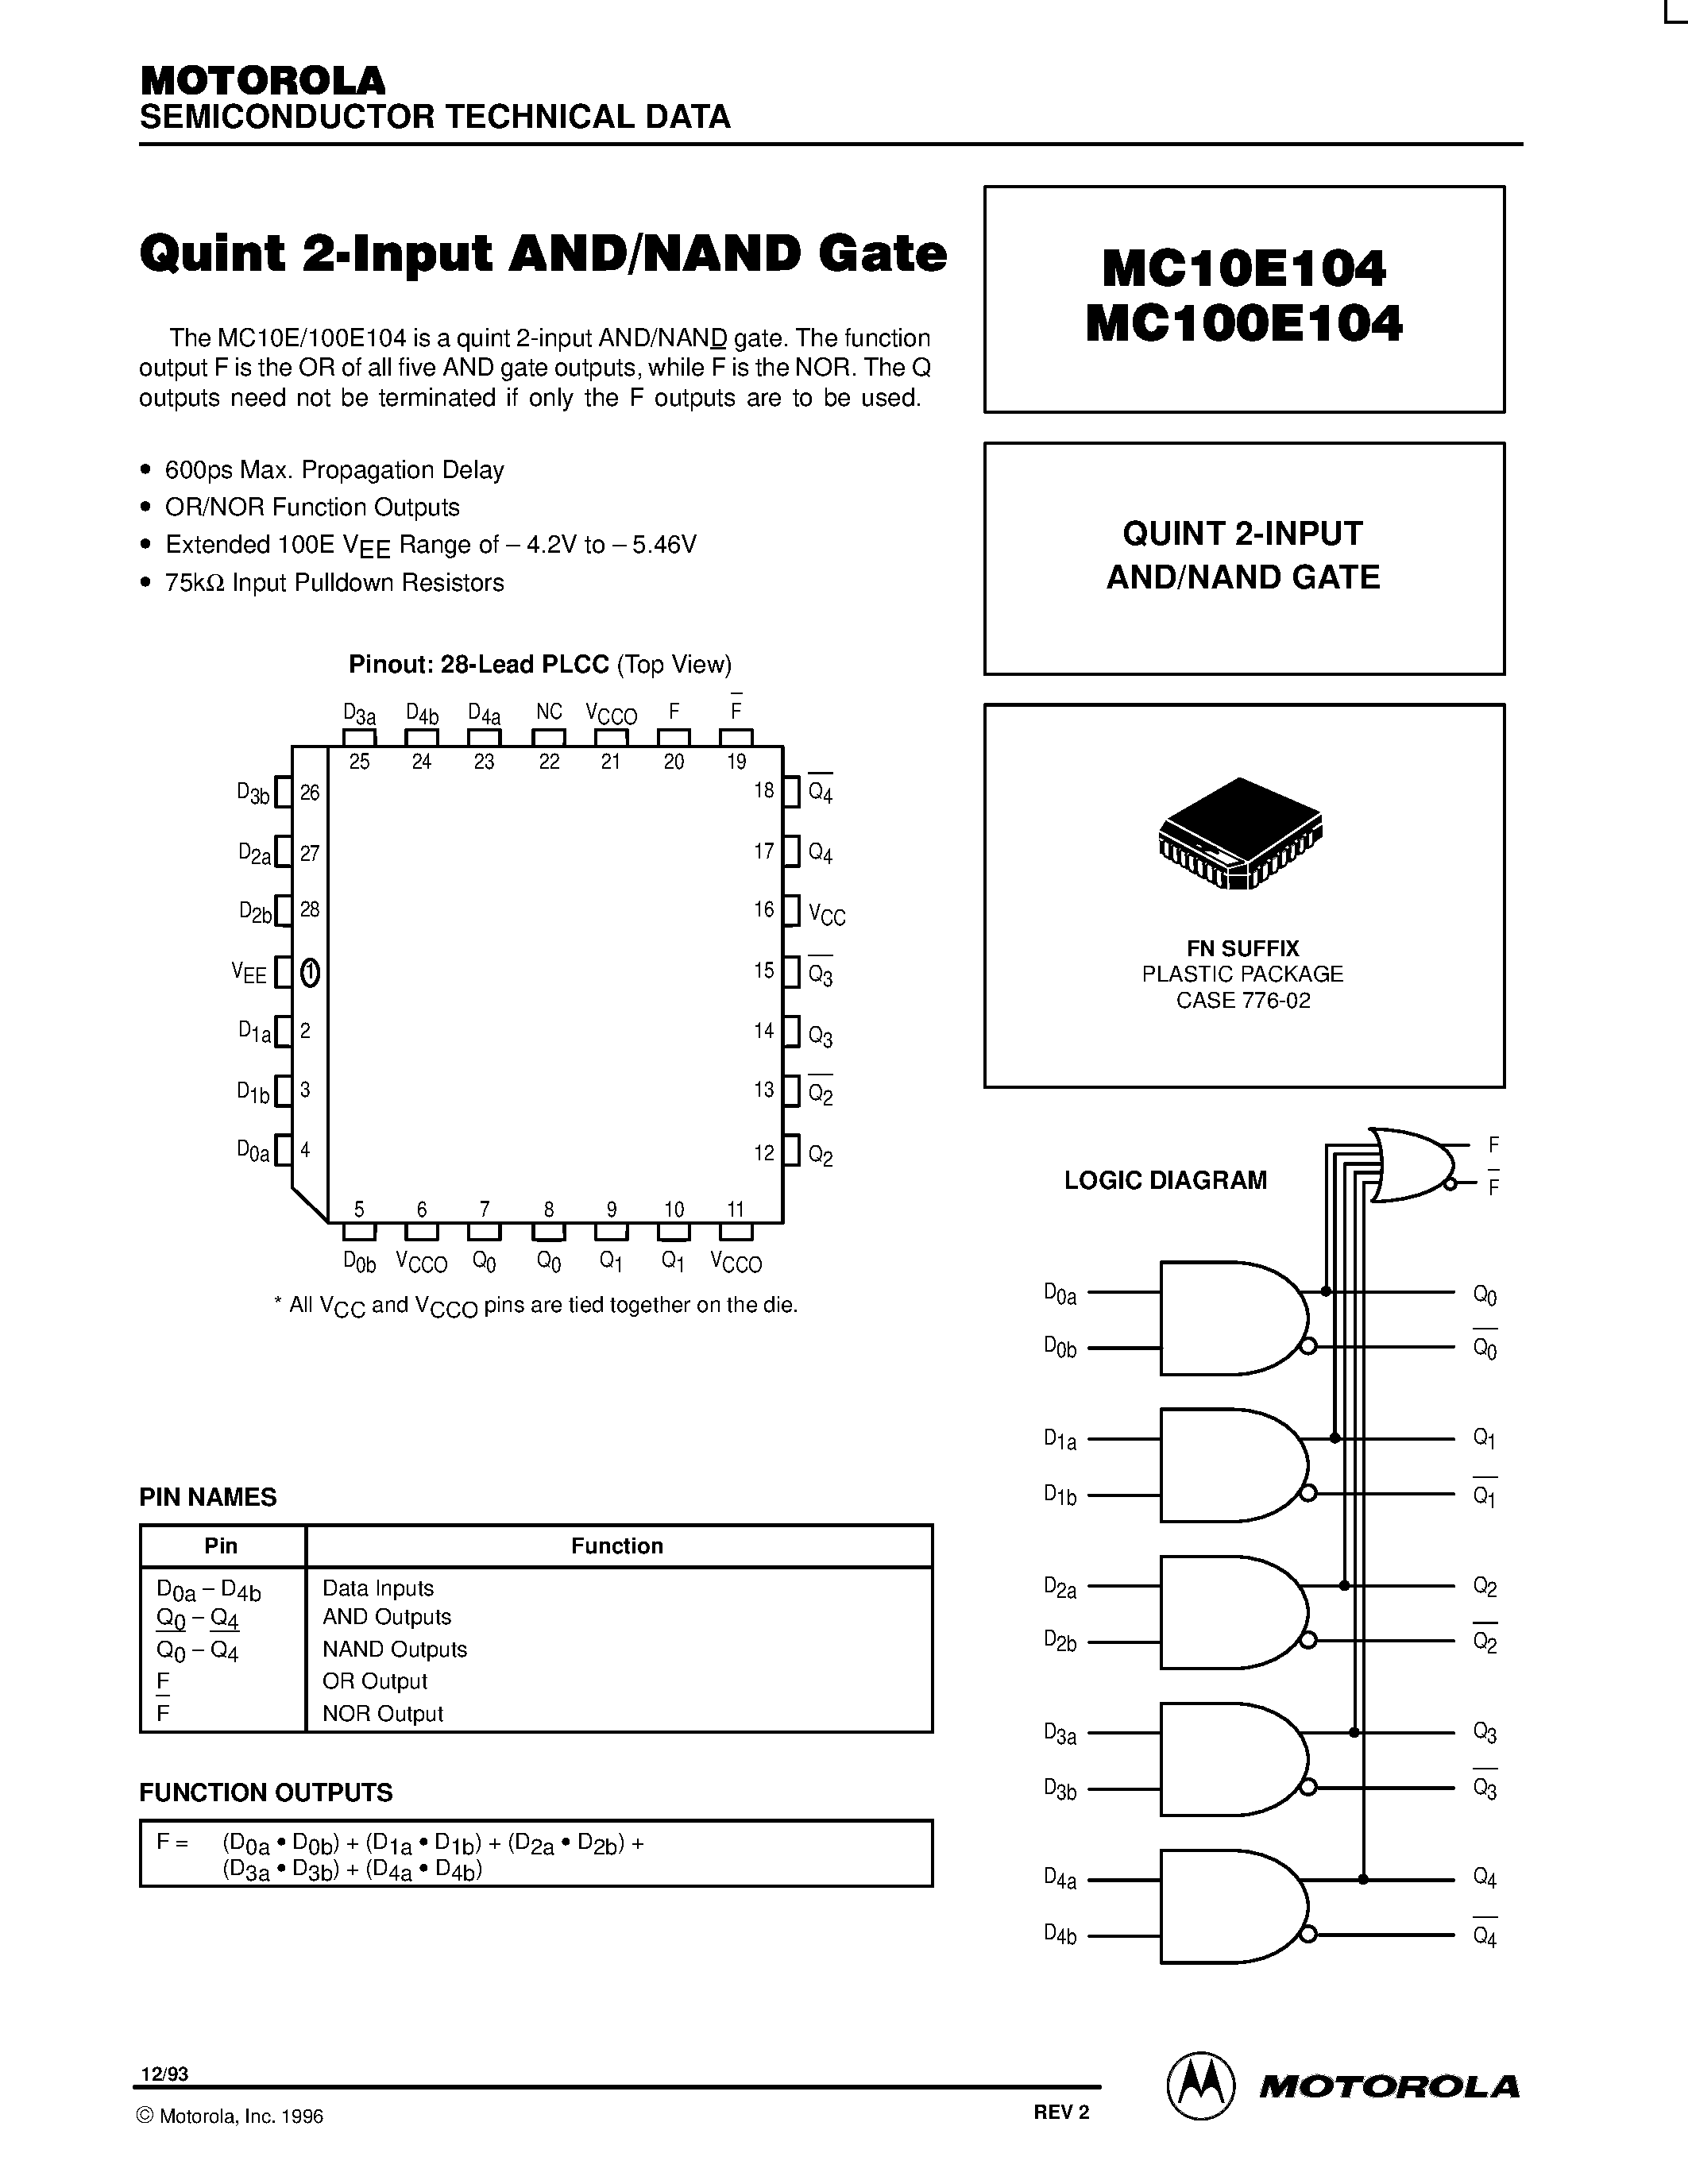 Даташит MC100E104FN - QUINT 2-INPUT AND/NAND GATE страница 1